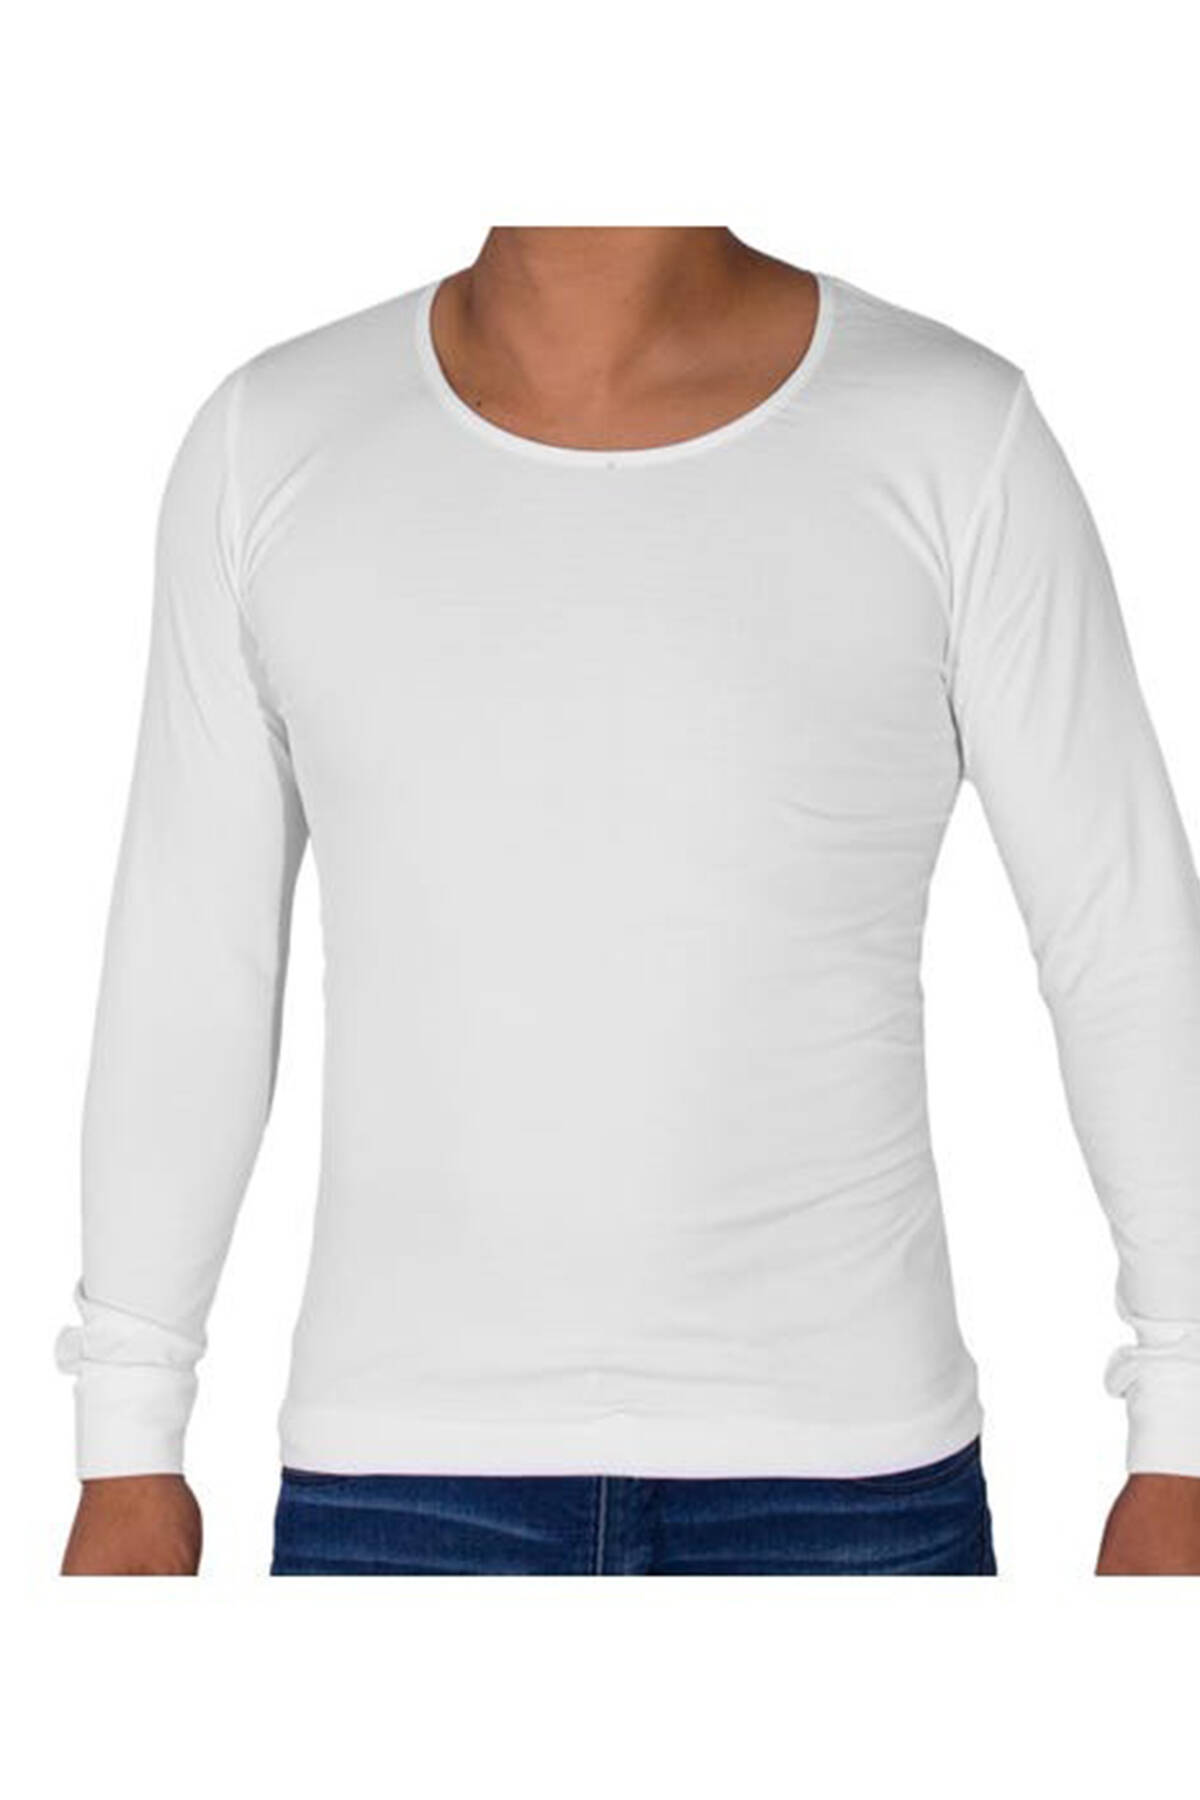 Camiseta de hombre blanca | Distrito Moda